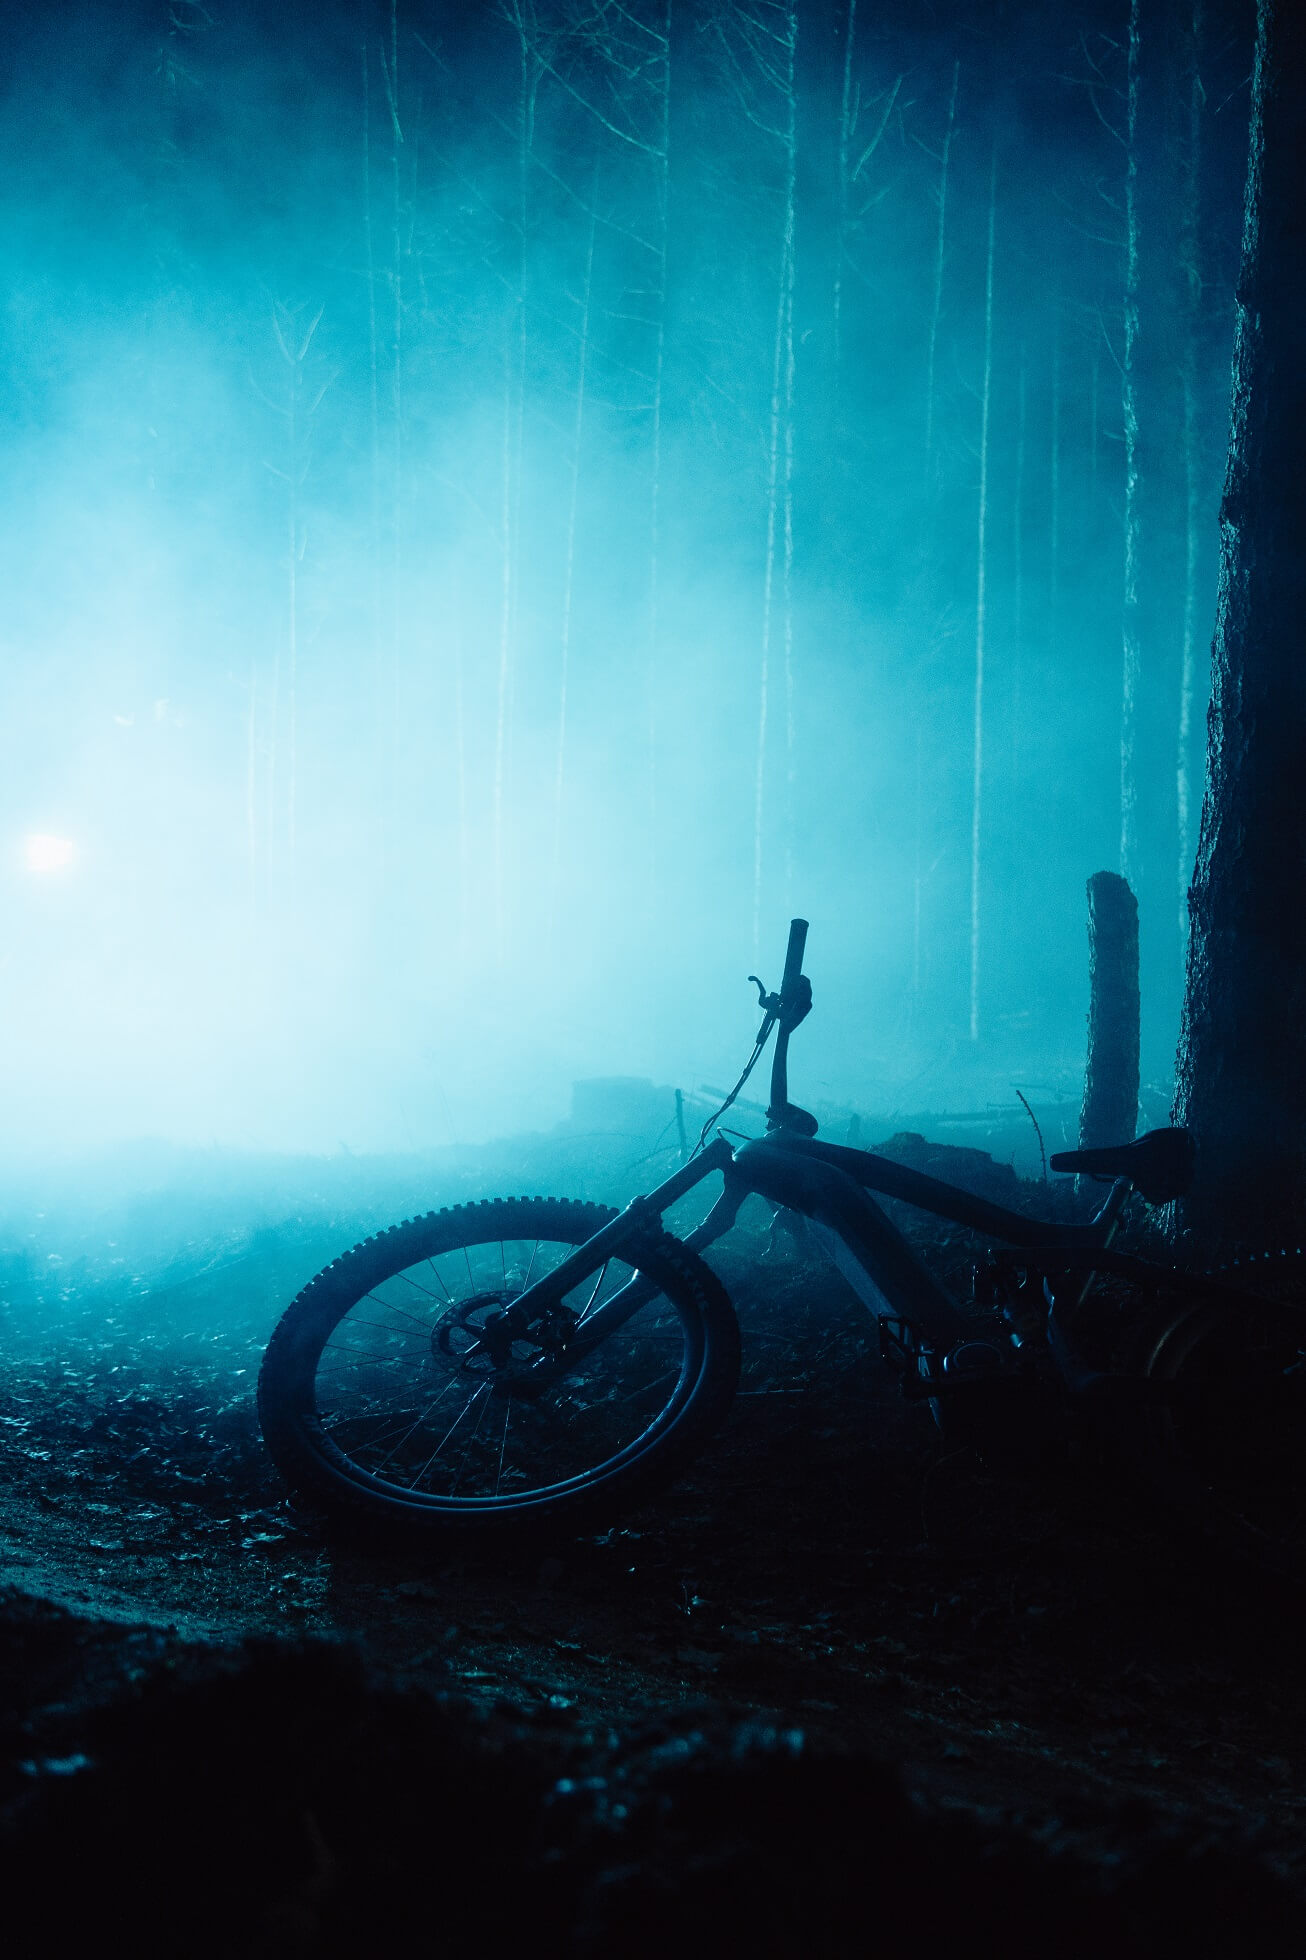 Horské kolo v temném, mírně mlhavém lese s modrým světlem v pozadí